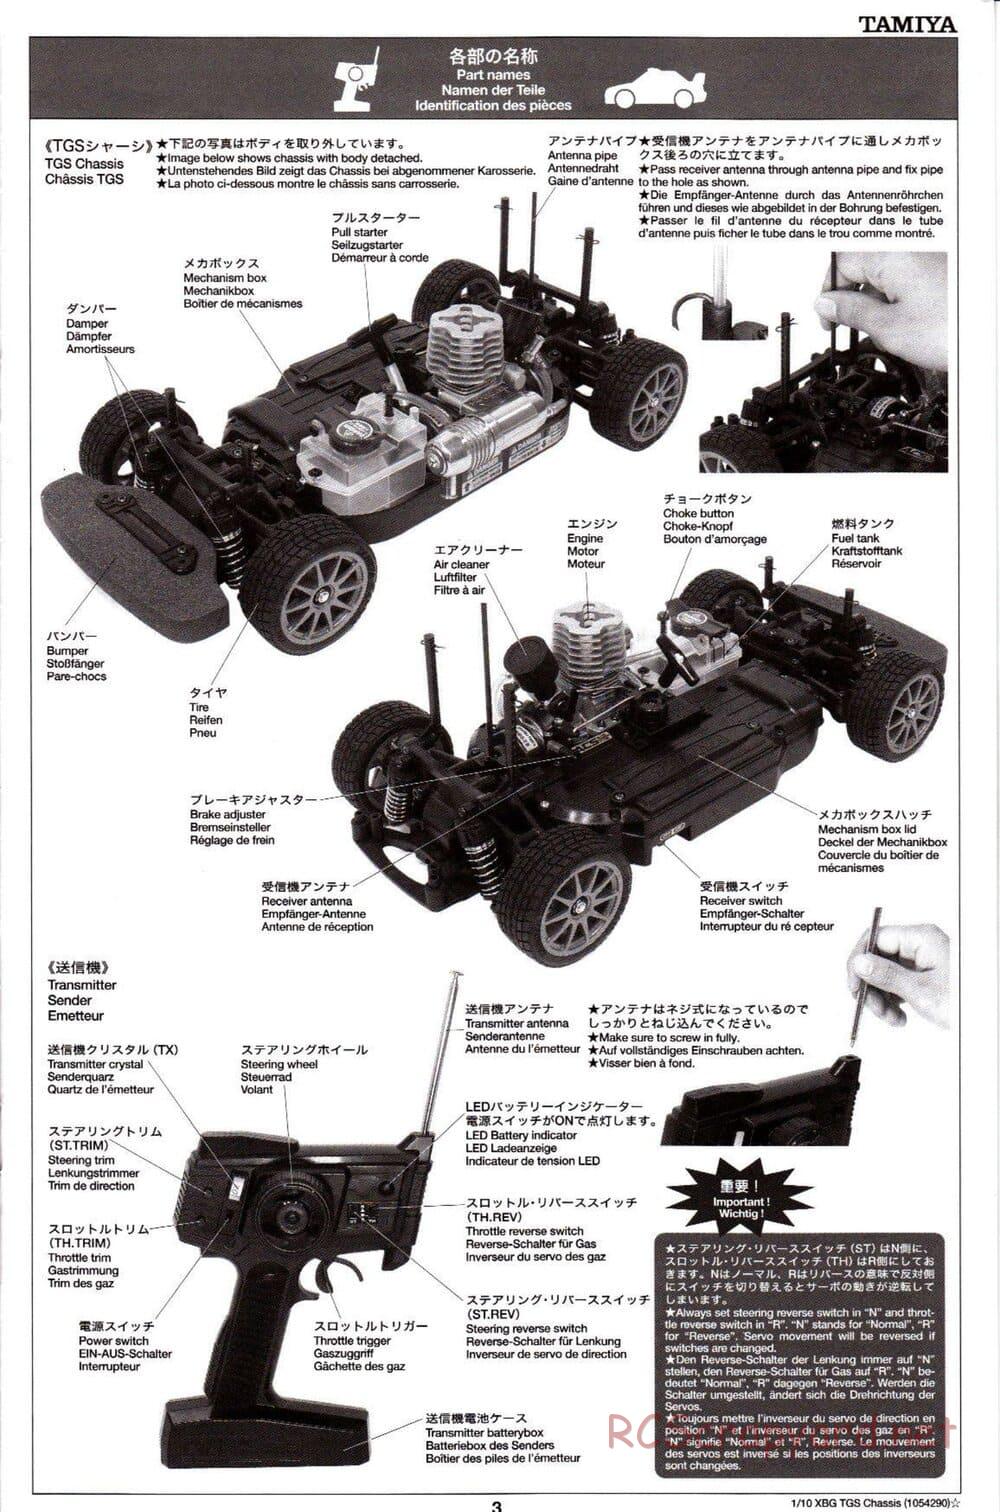 Tamiya - TGS Chassis - Manual - Page 3